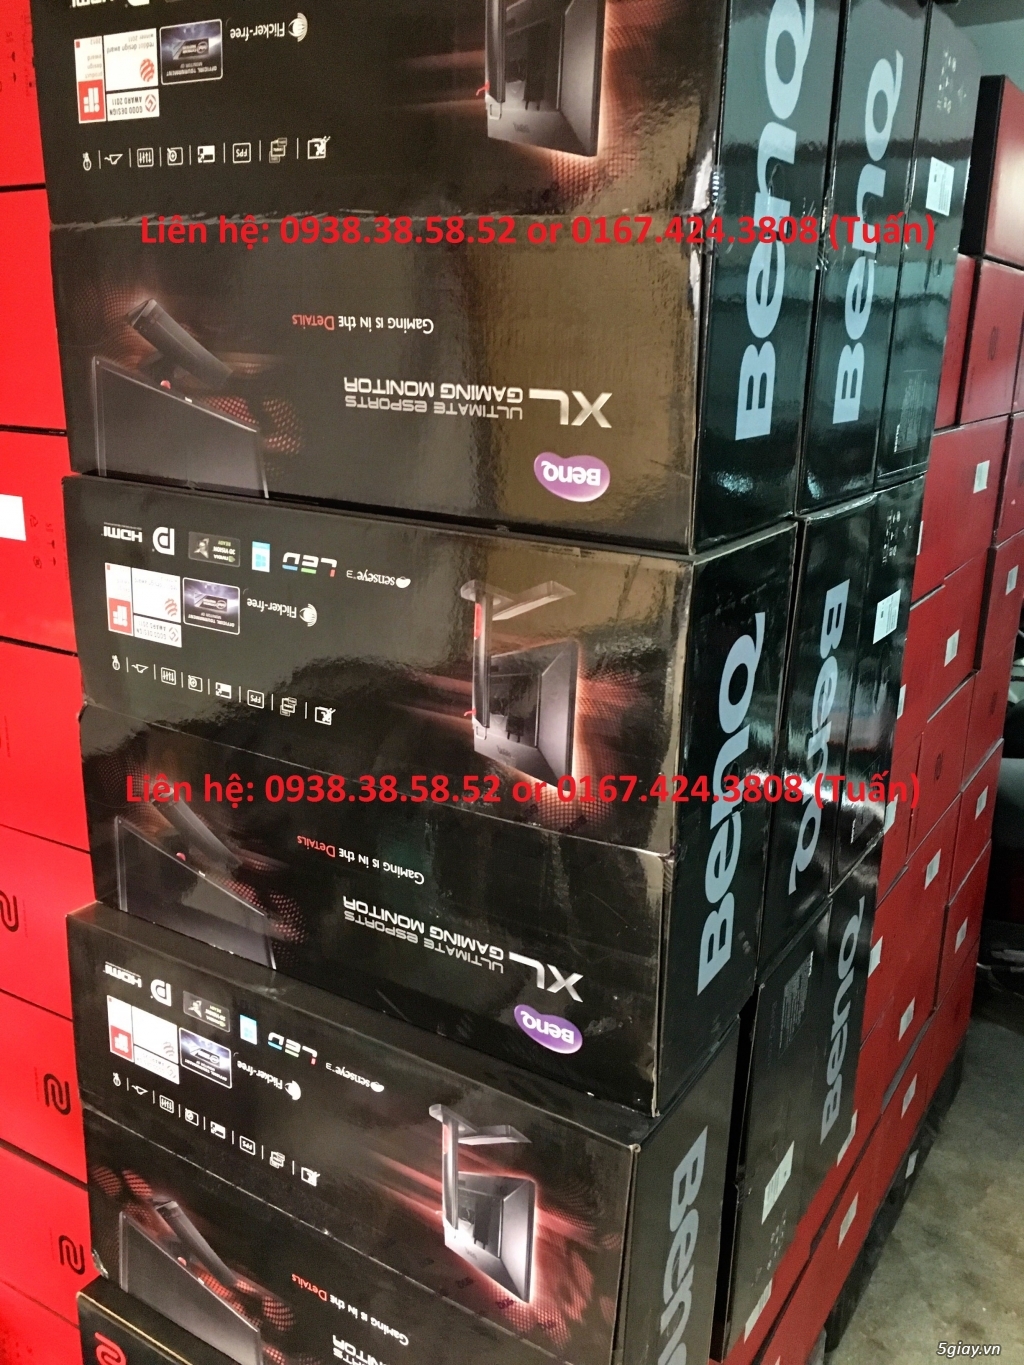 Thanh lý LCD DELL 19,22,23,24,27,30 new Ultrasharp + Led giá 1/2 giá thị trường - 4